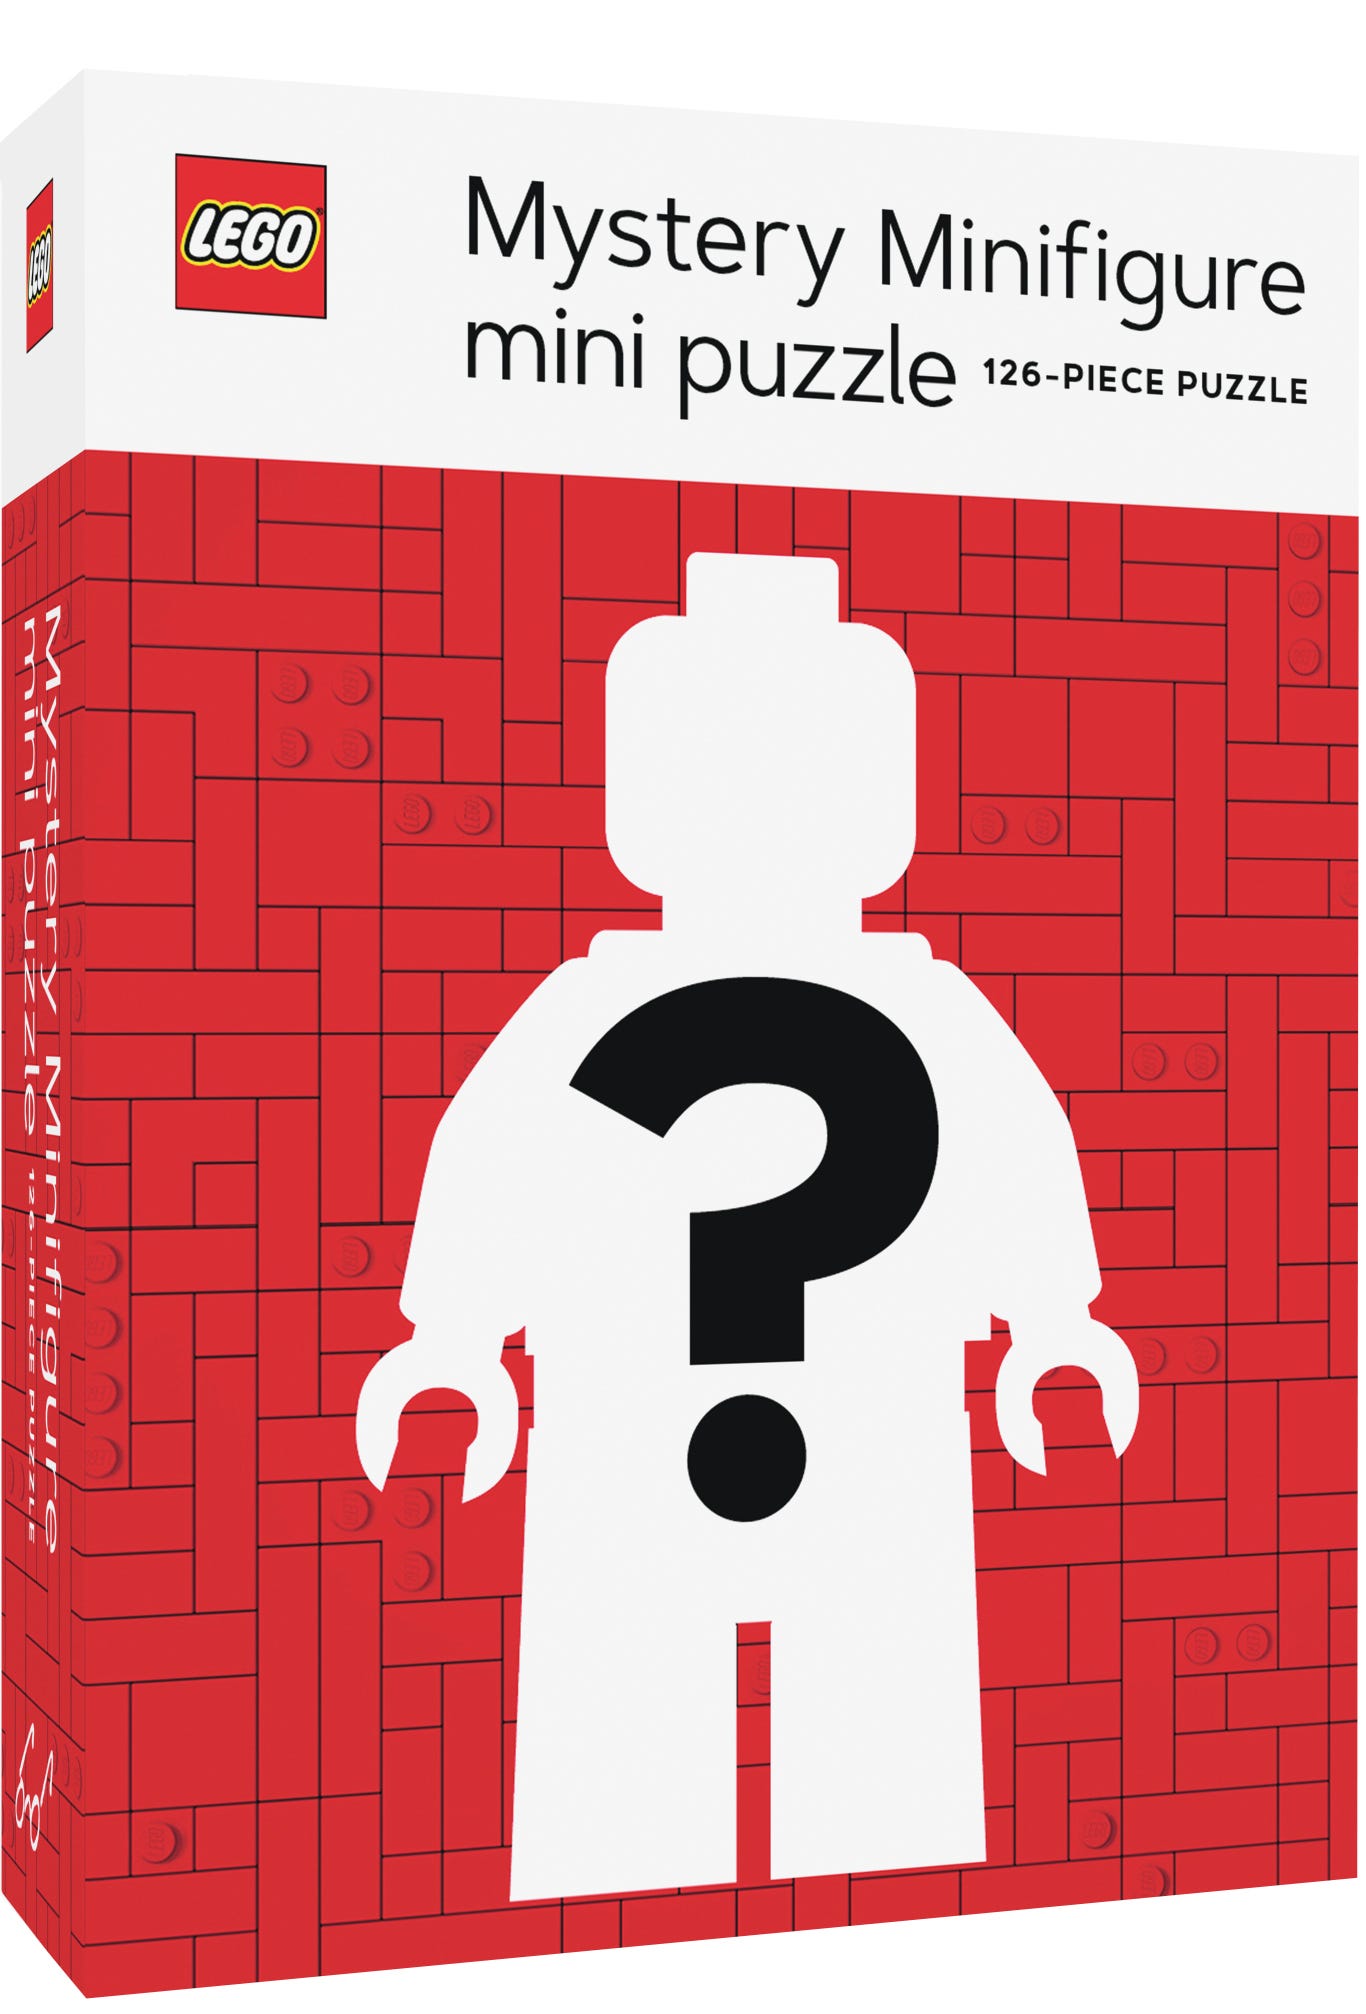 Minipuzle “Mystery Minifigure” (edición roja)